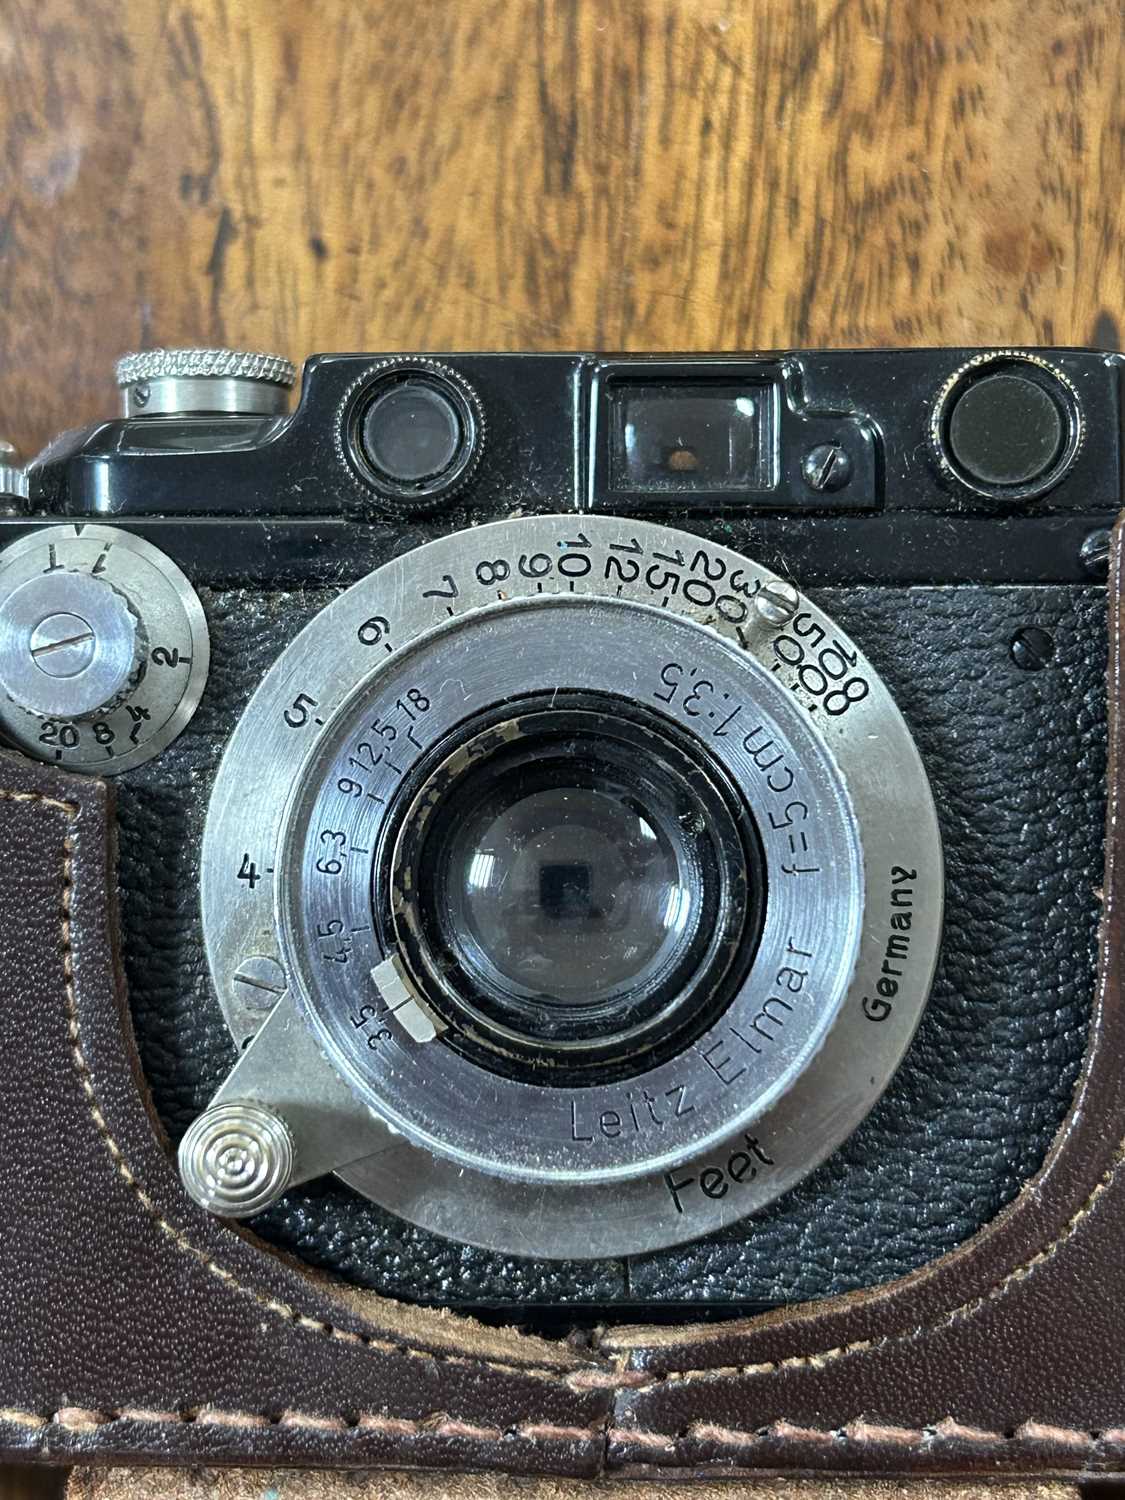 A Leica camera - Image 8 of 12